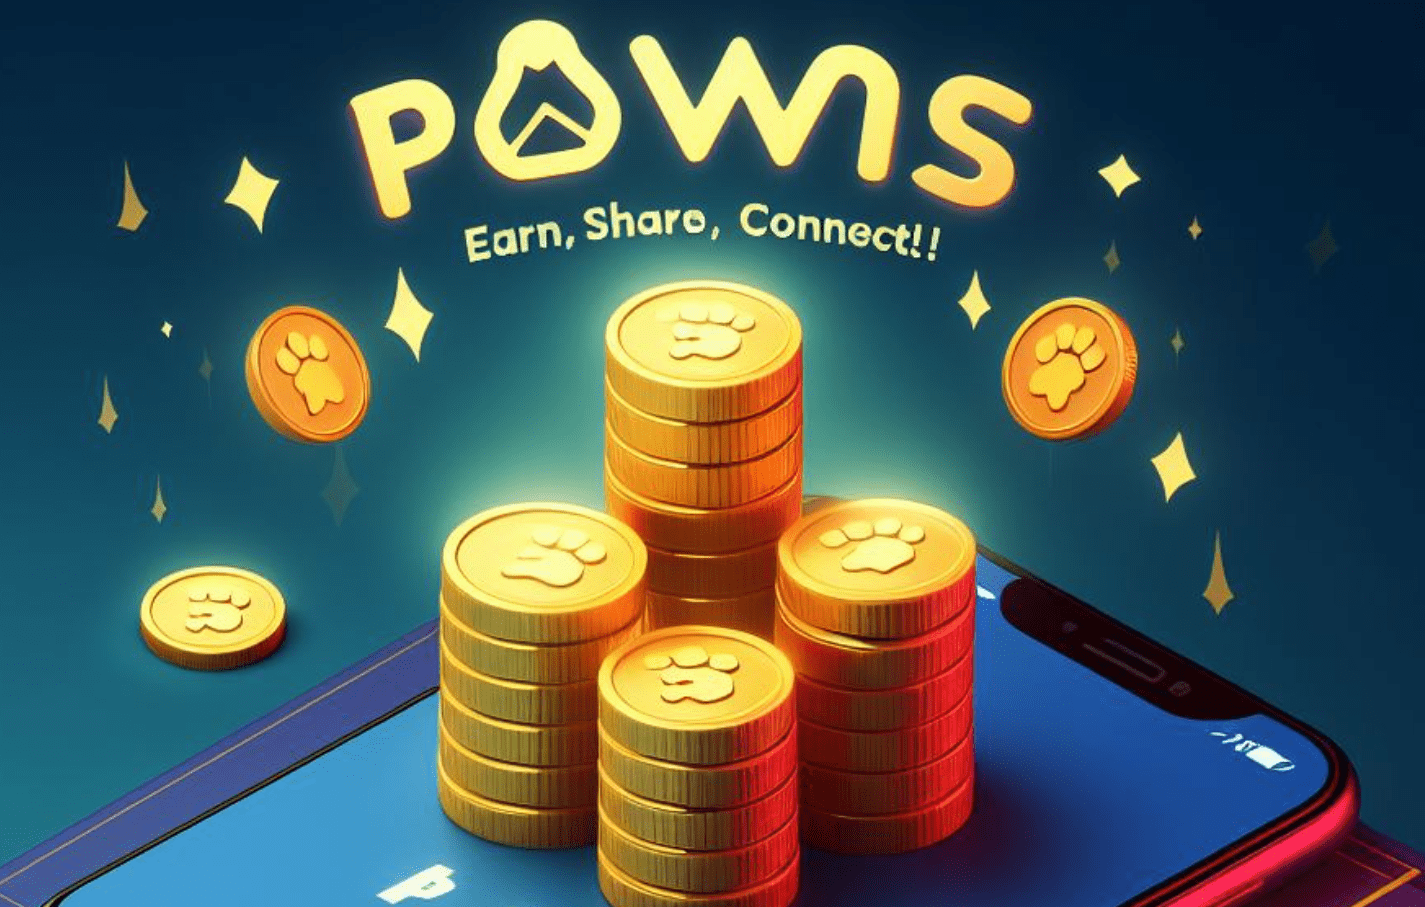 pawns.app thumbnail for blog post